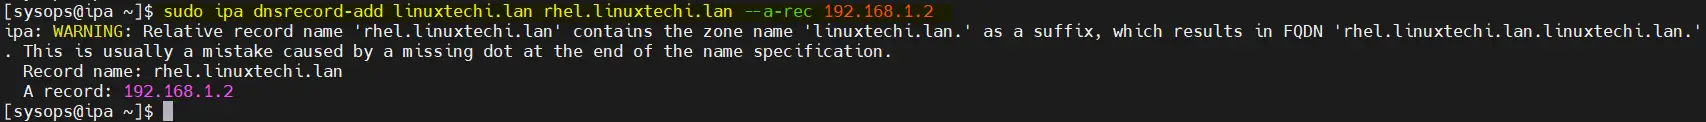 Add-DNS-Record-RHEL-RockyLinux-AlmaLinux